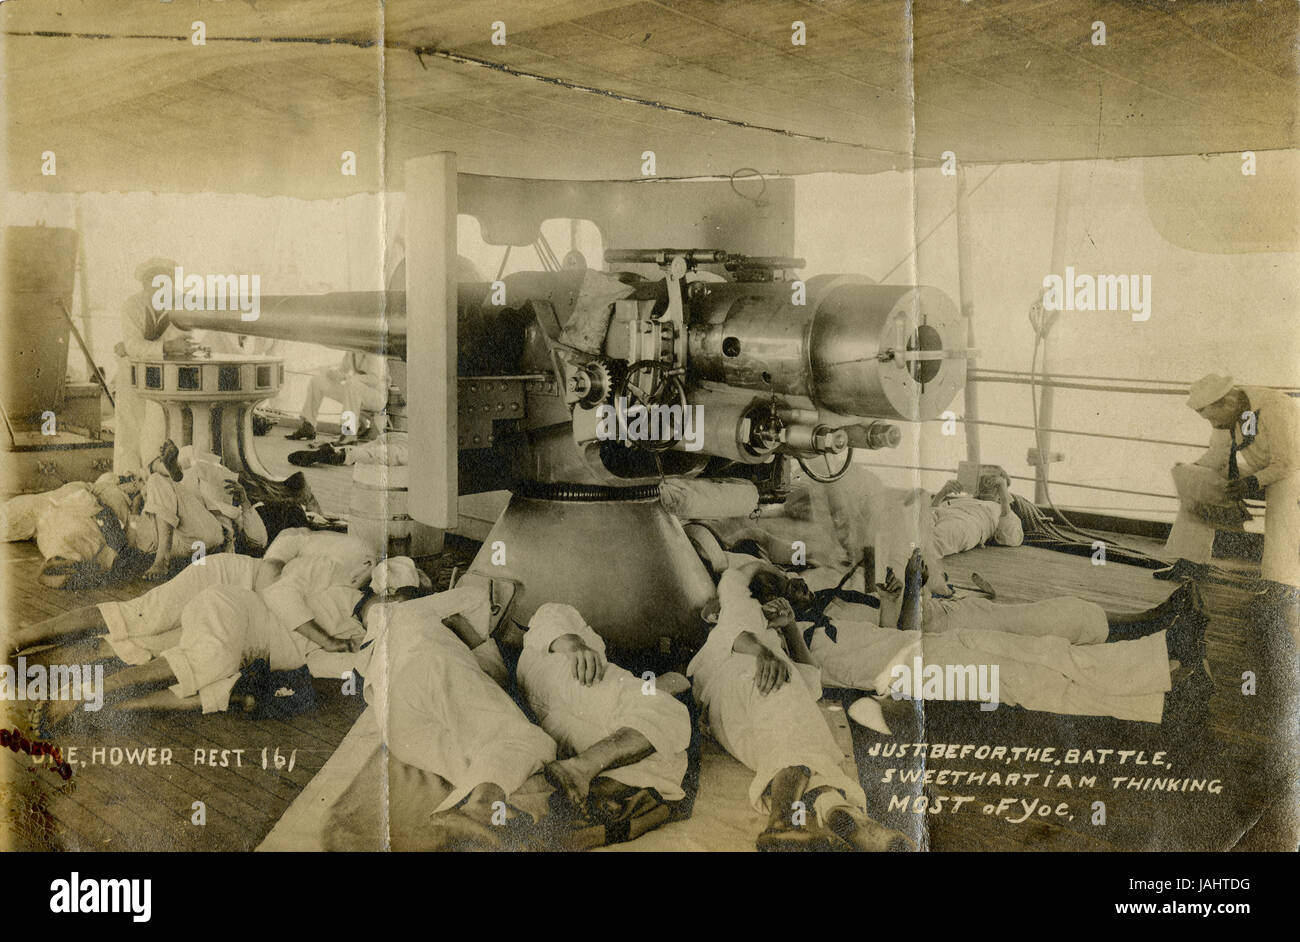 Antique c1910 fotografia, marinai sonno sotto la pistola lungo di un US Navy corazzata: 'appena prima della battaglia, Sweetheart penso la maggior parte di voi." Fonte: originale stampa fotografica. Foto Stock